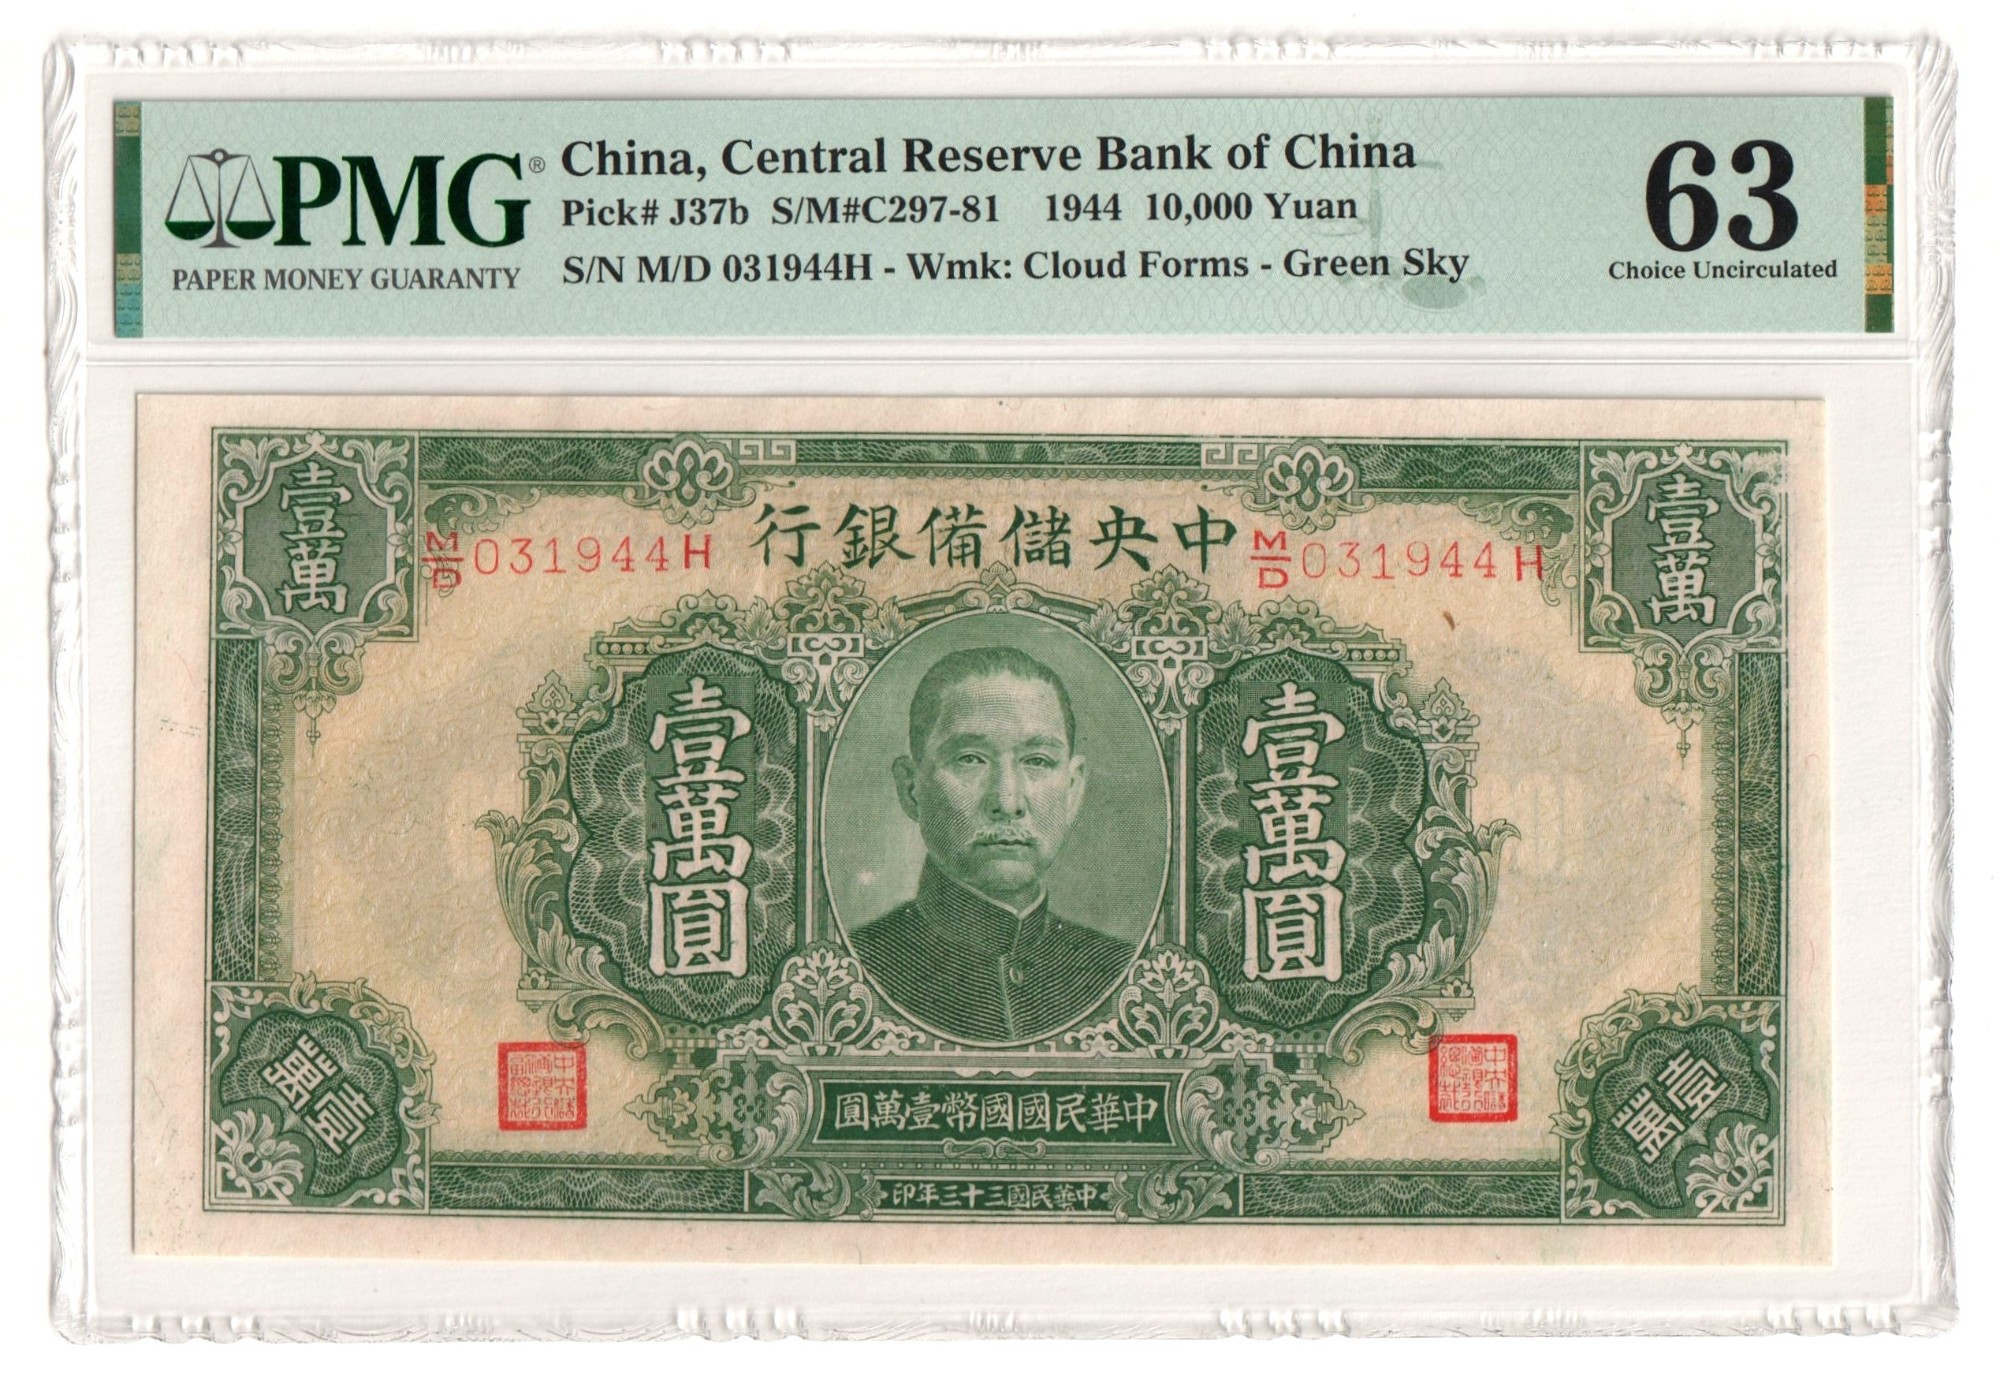 200 тысяч юаней. Китайская купюра 1000. Китайская купюра 10 юаней. Банкнота Китая 10 юаней 1944 года. Китайские банкноты со Сталиным.